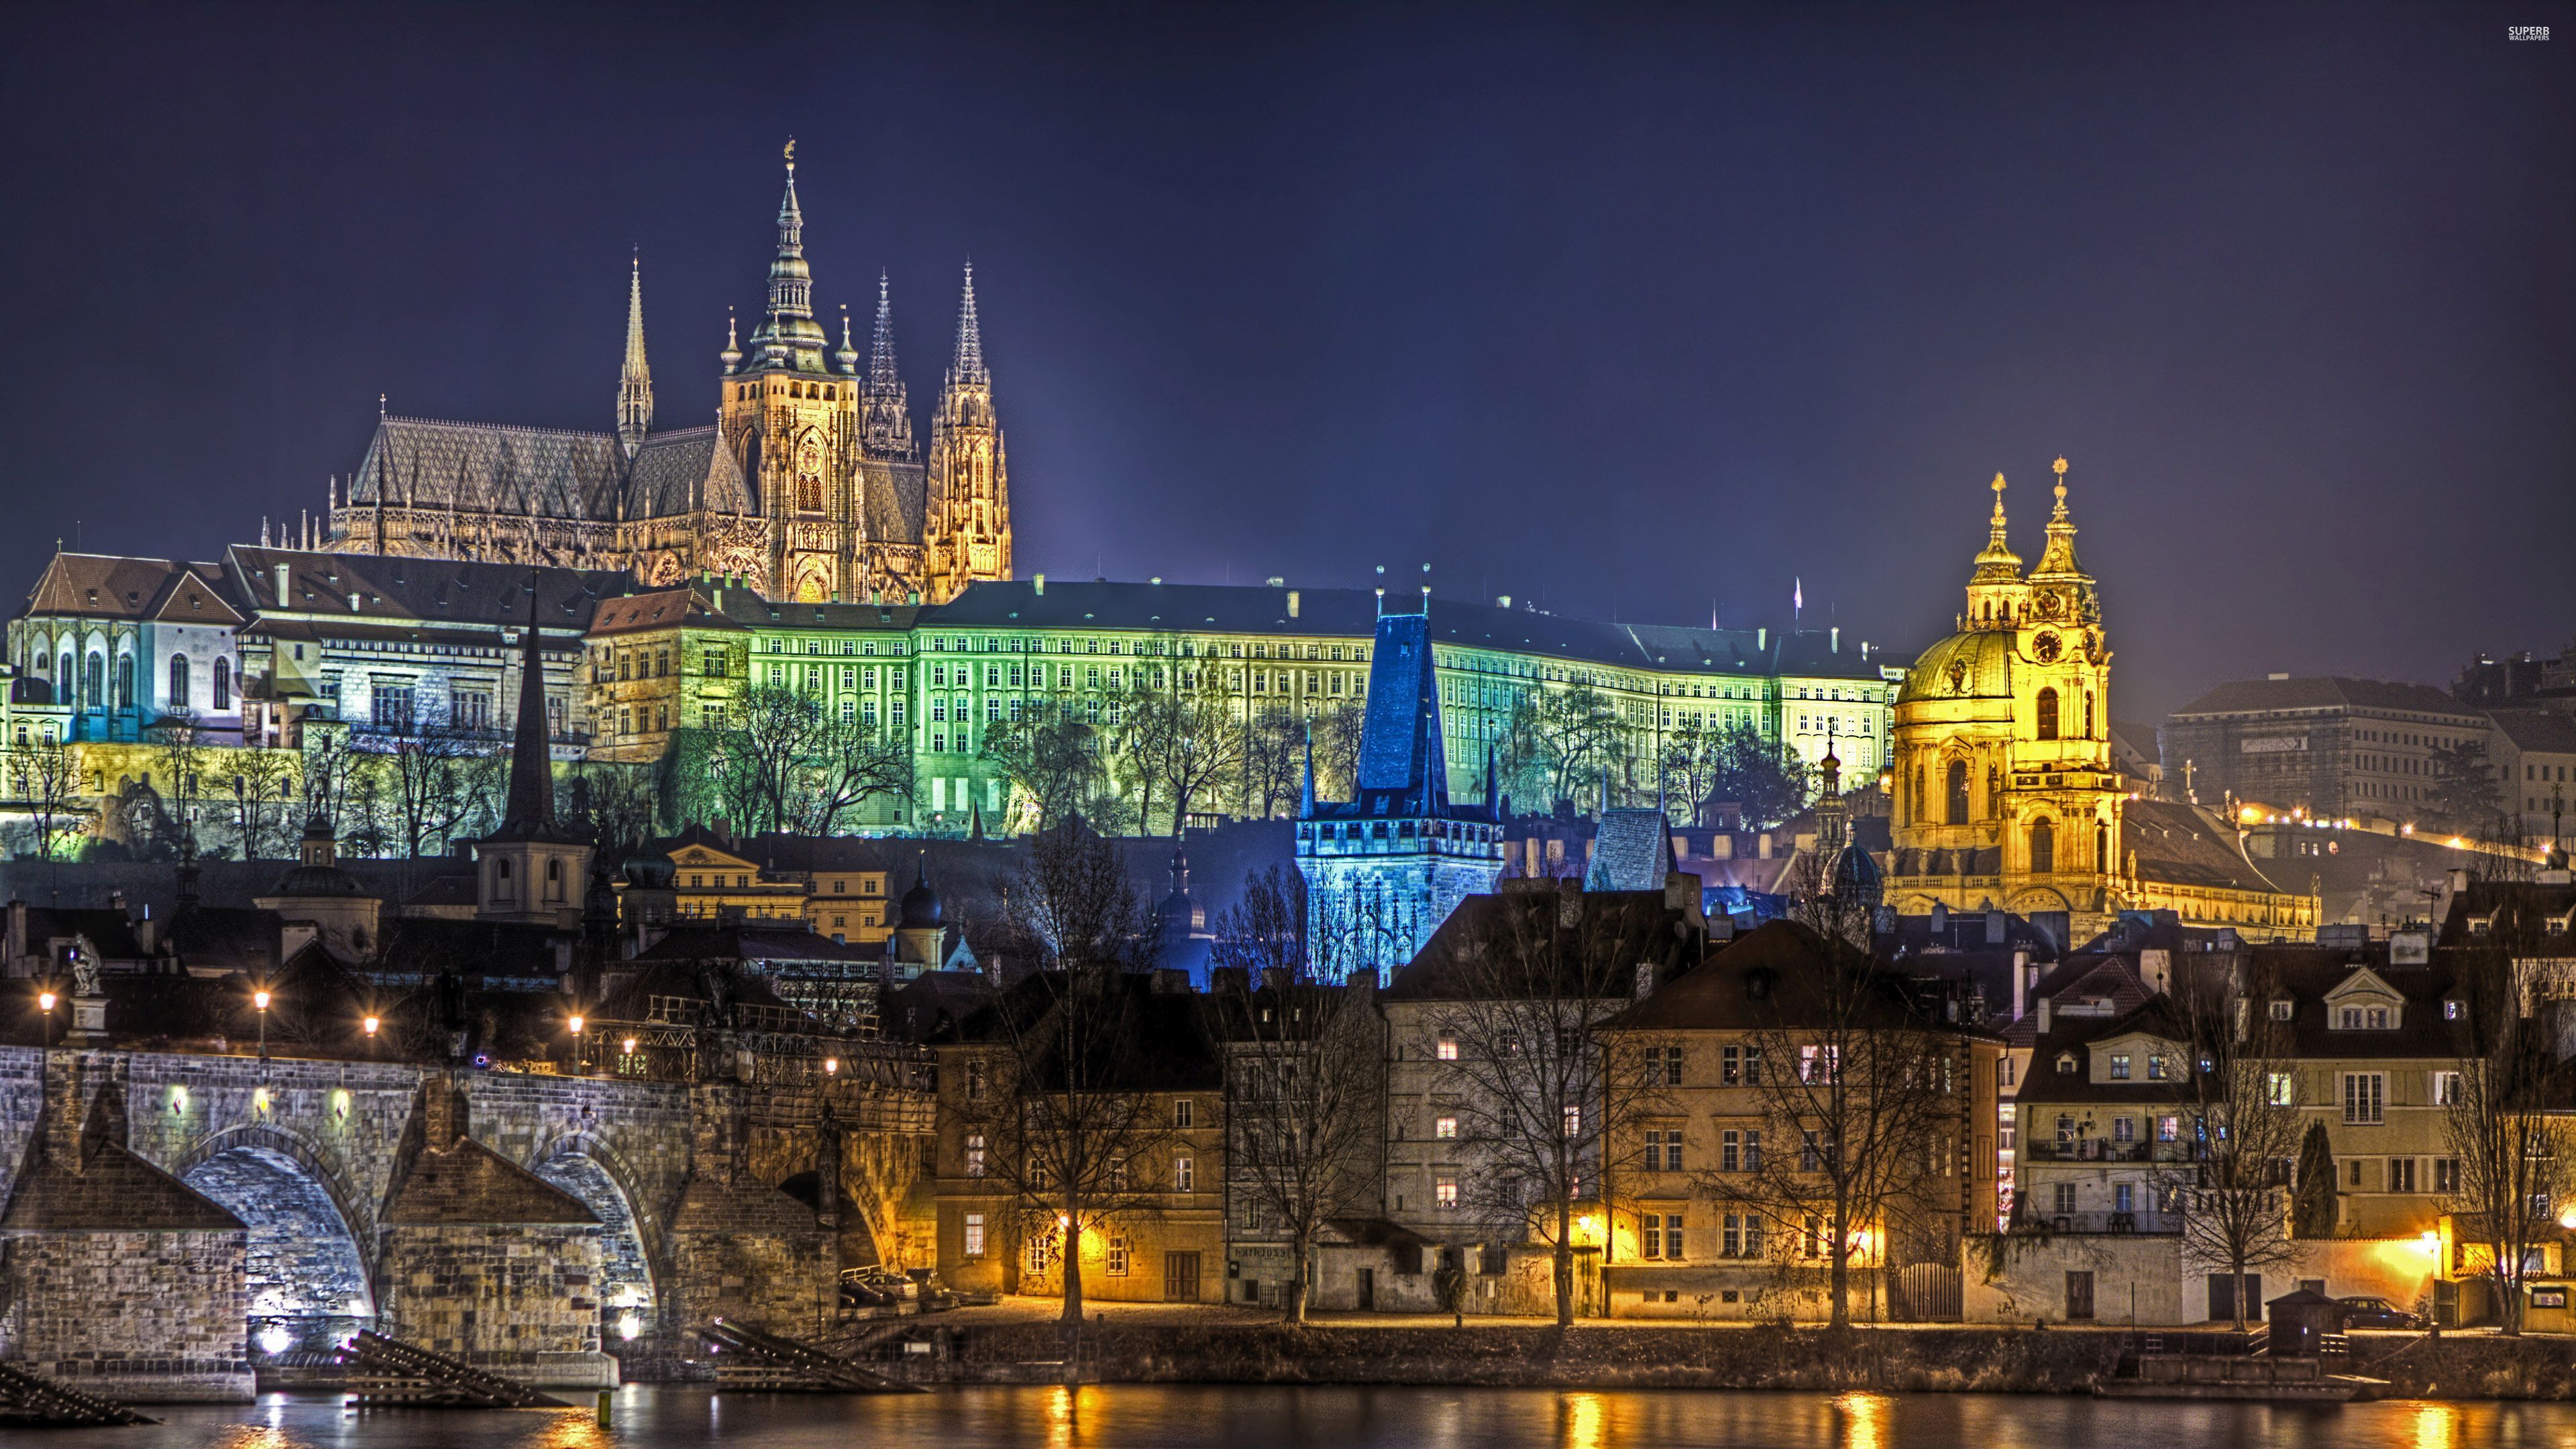 Prague wallpaper - World wallpapers -